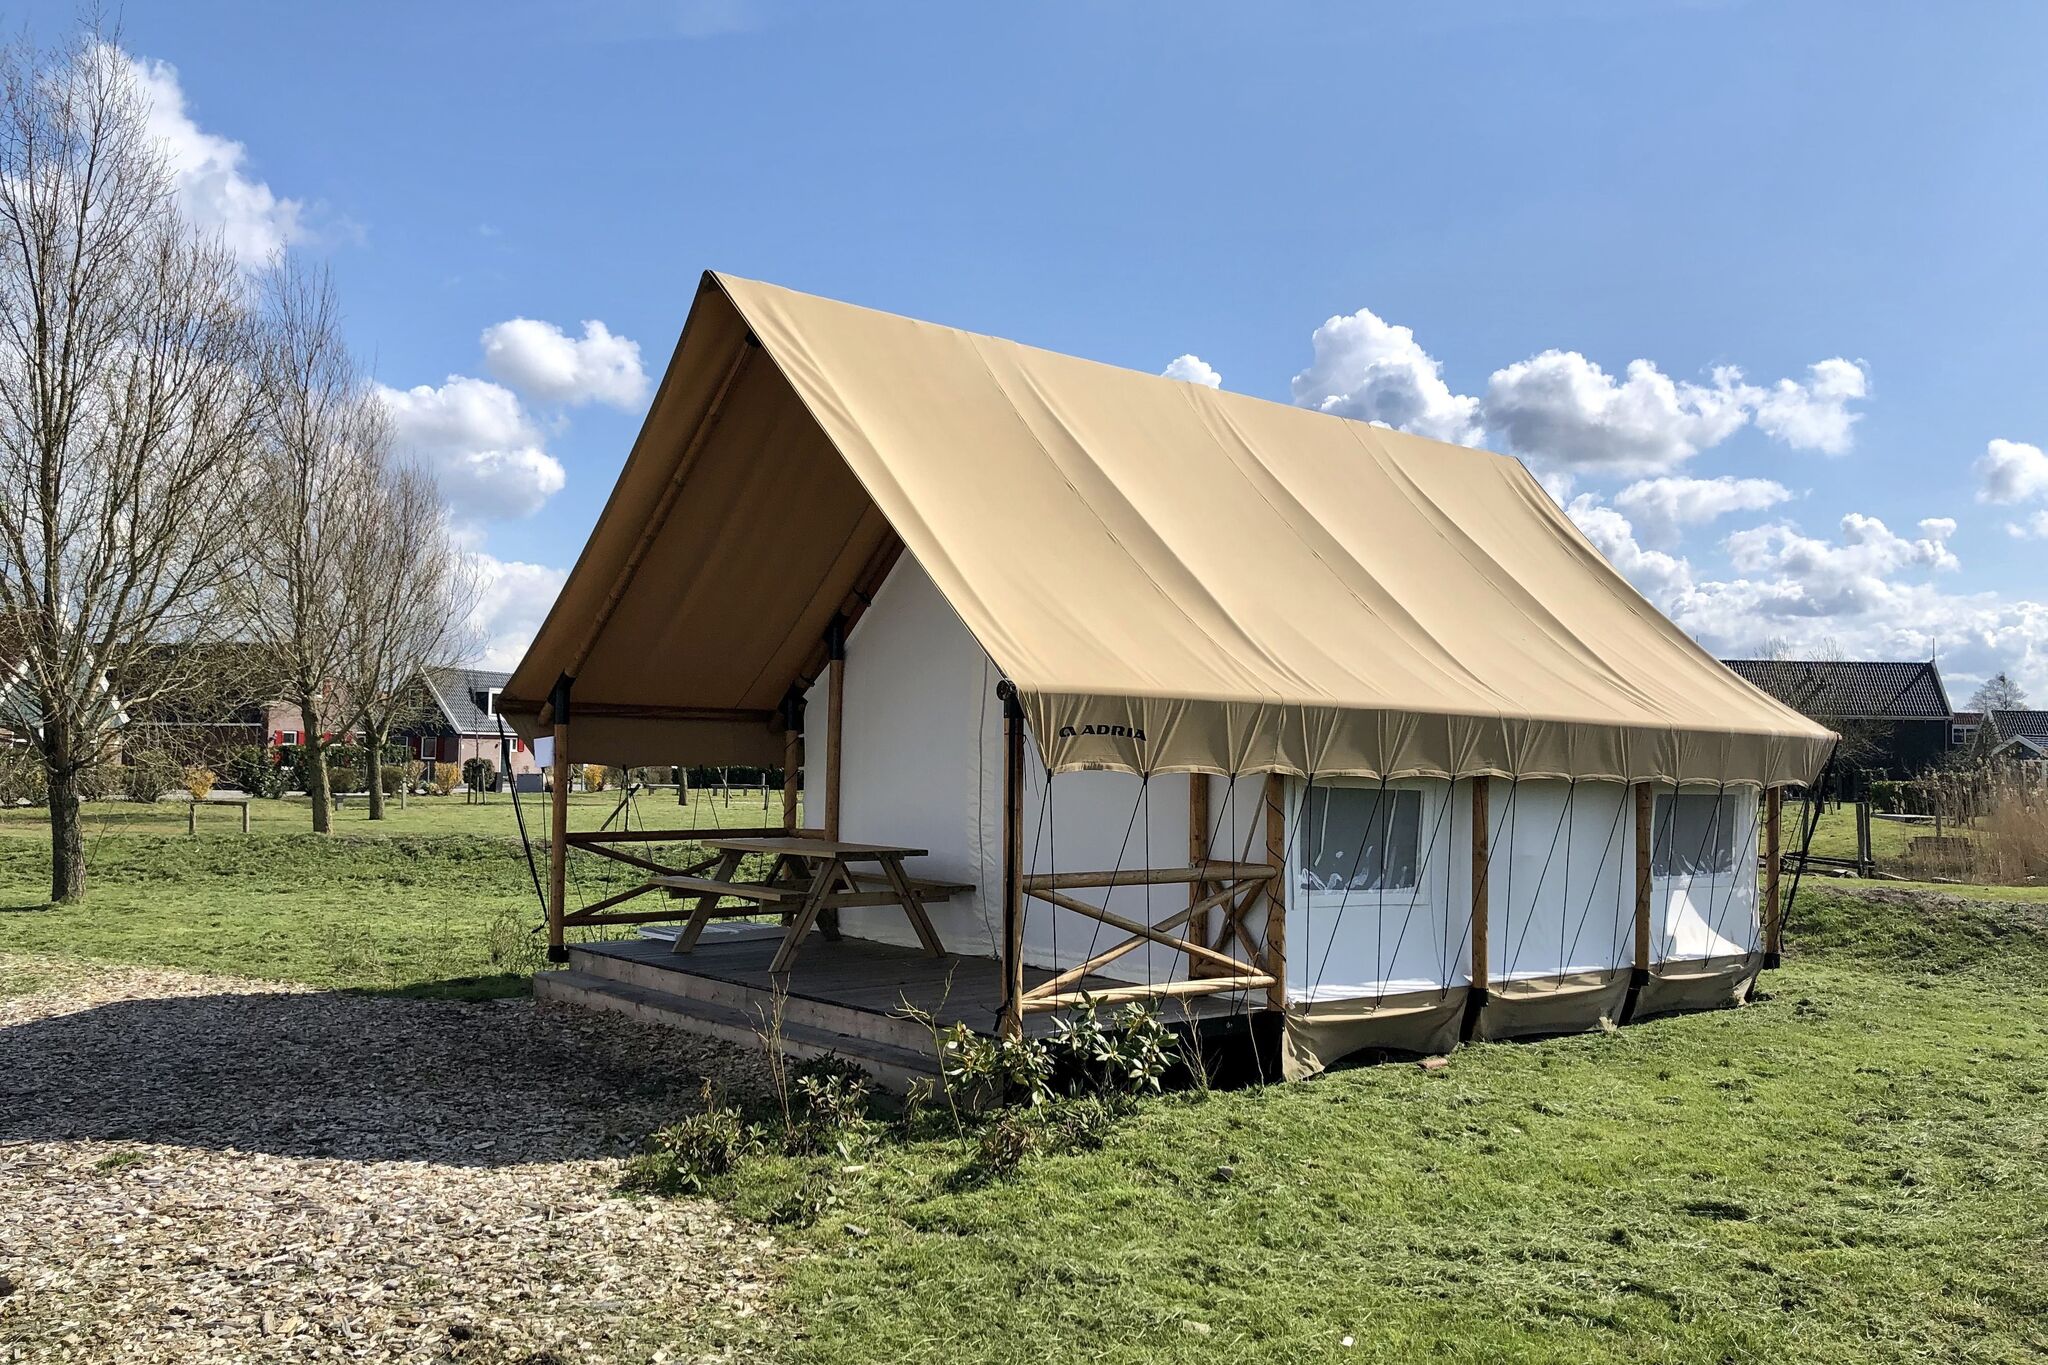 Schöne Zelthütte mit Veranda, 2 km von Ijhorst entfernt